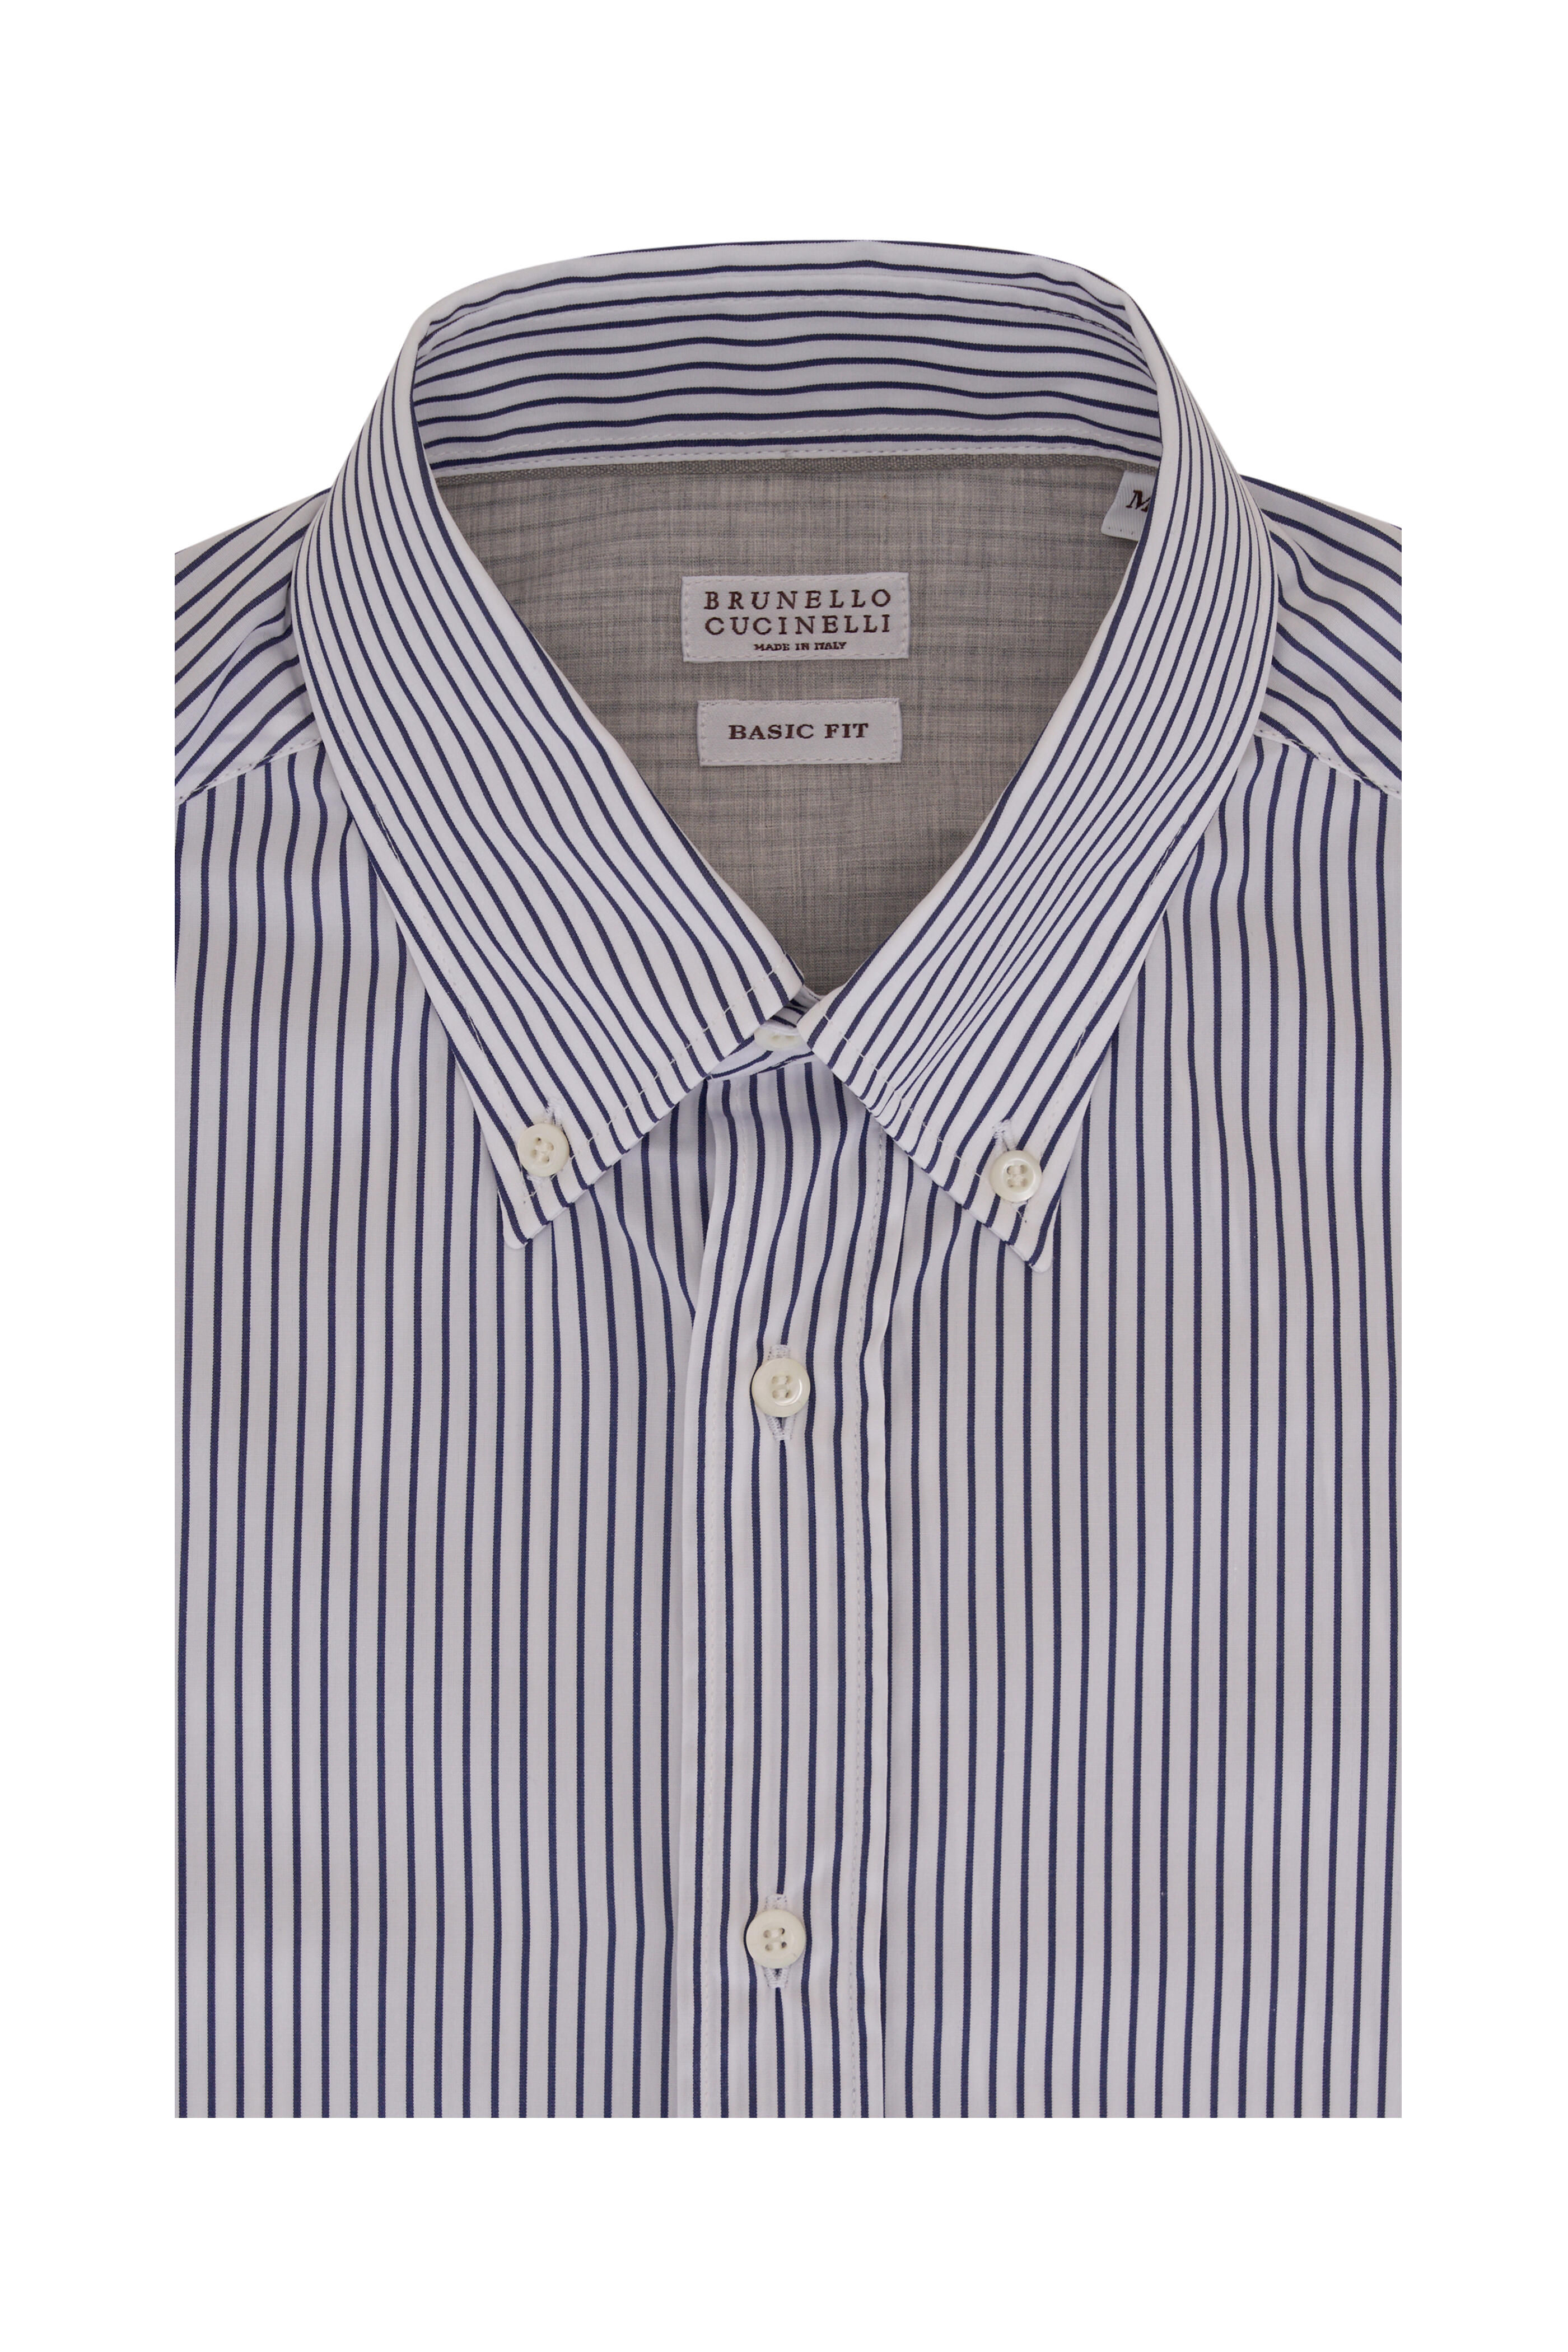 Brunello Cucinelli - Navy & White Striped Cotton Sport Shirt